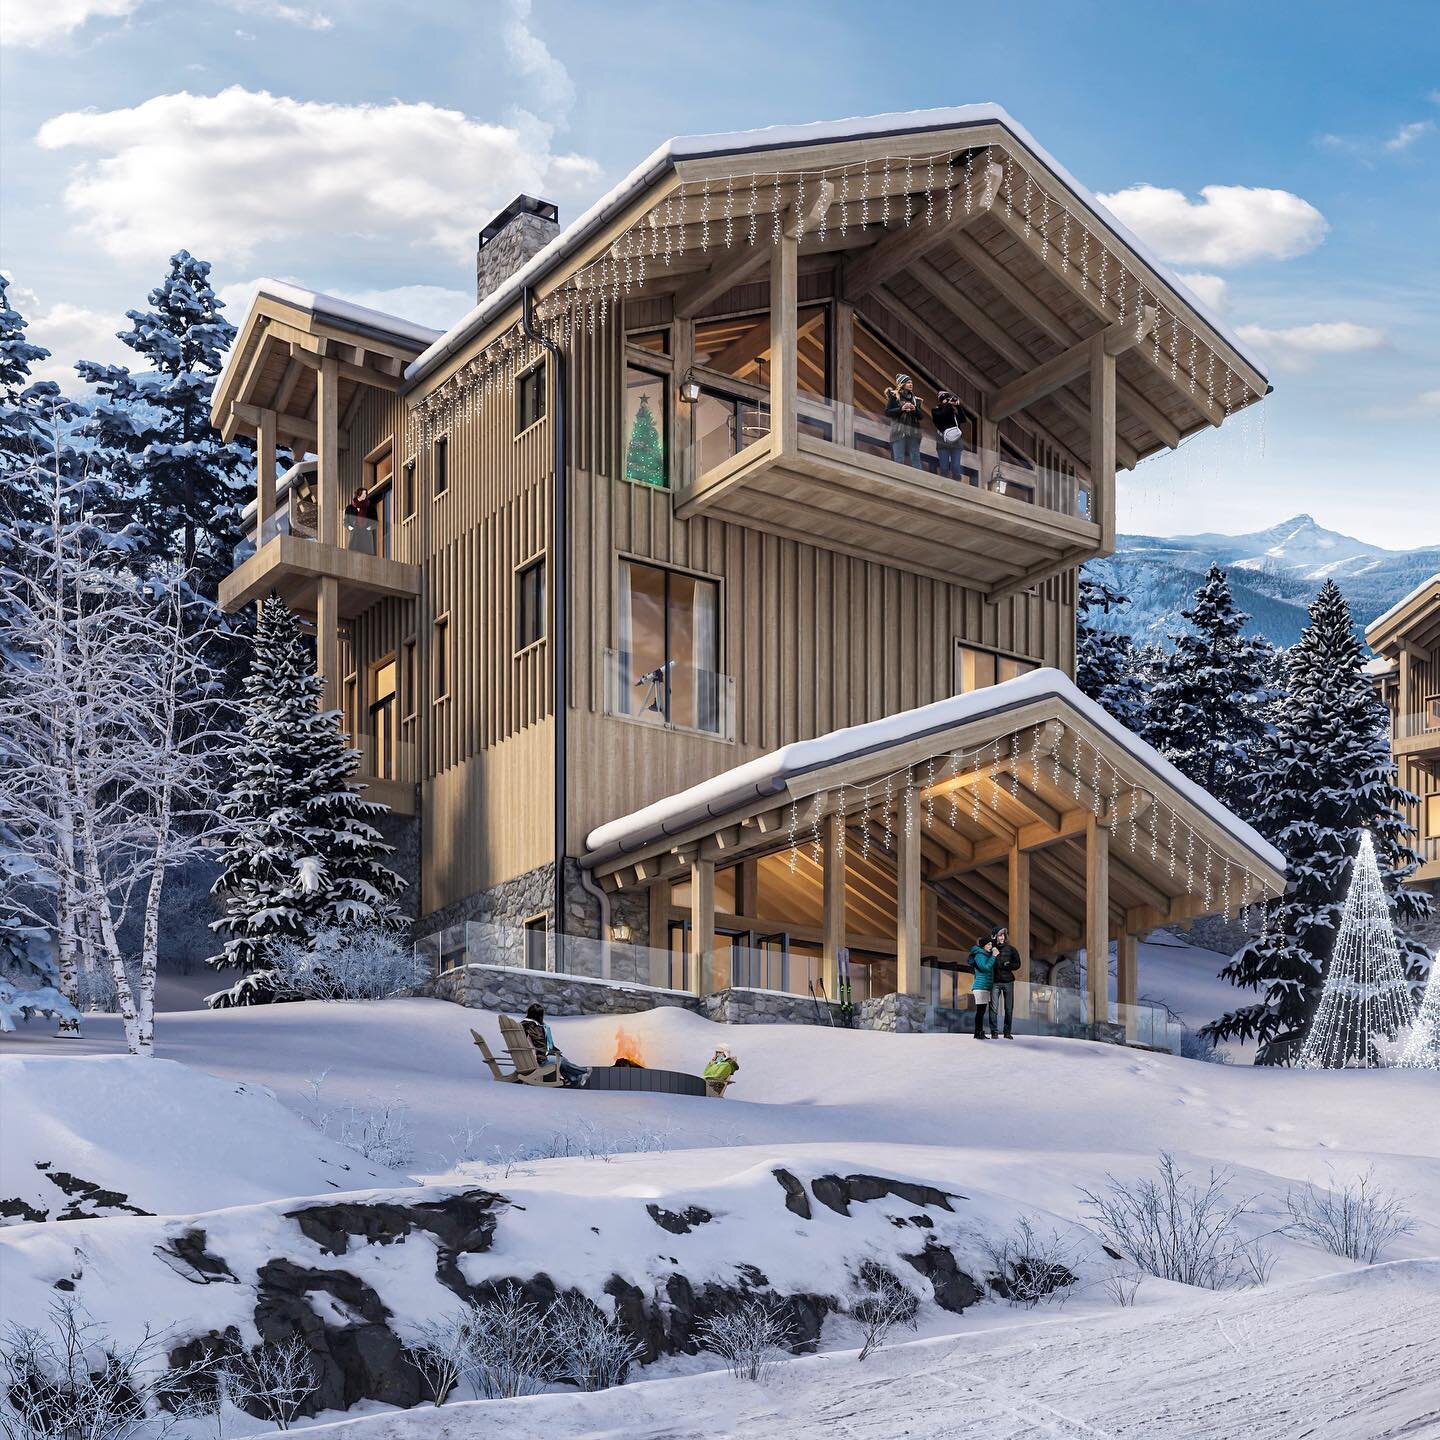 Ski chalet.
Rendered in #3dsmax and #coronarender 
.
.
.
#archviz #architecture #rendering #architecturevisualization #ski #skichalet #chalet #alps #winter #winterrender #renderzone #renderweekly #renderlovers #render3d #cgi